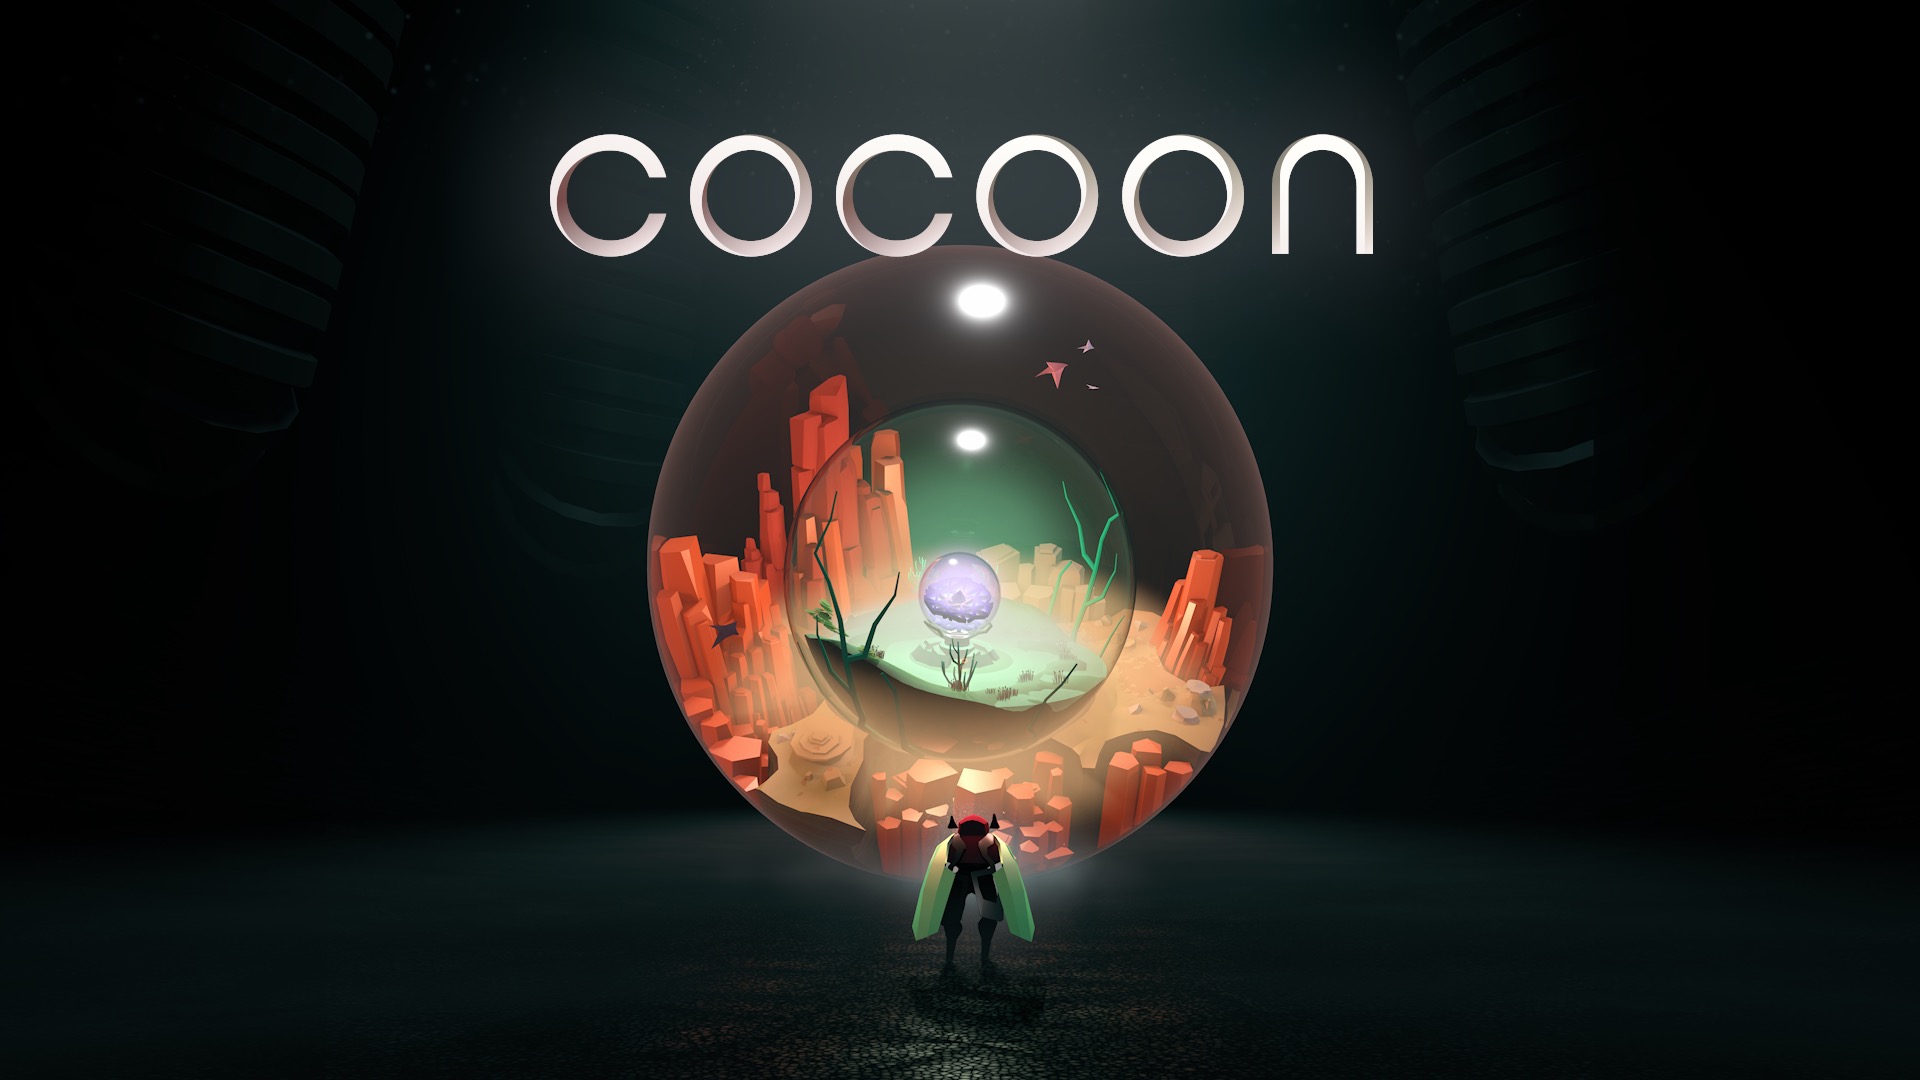 COCOON выйдет в Game Pass в день релиза, игра получила геймплейную демонстрацию: с сайта NEWXBOXONE.RU